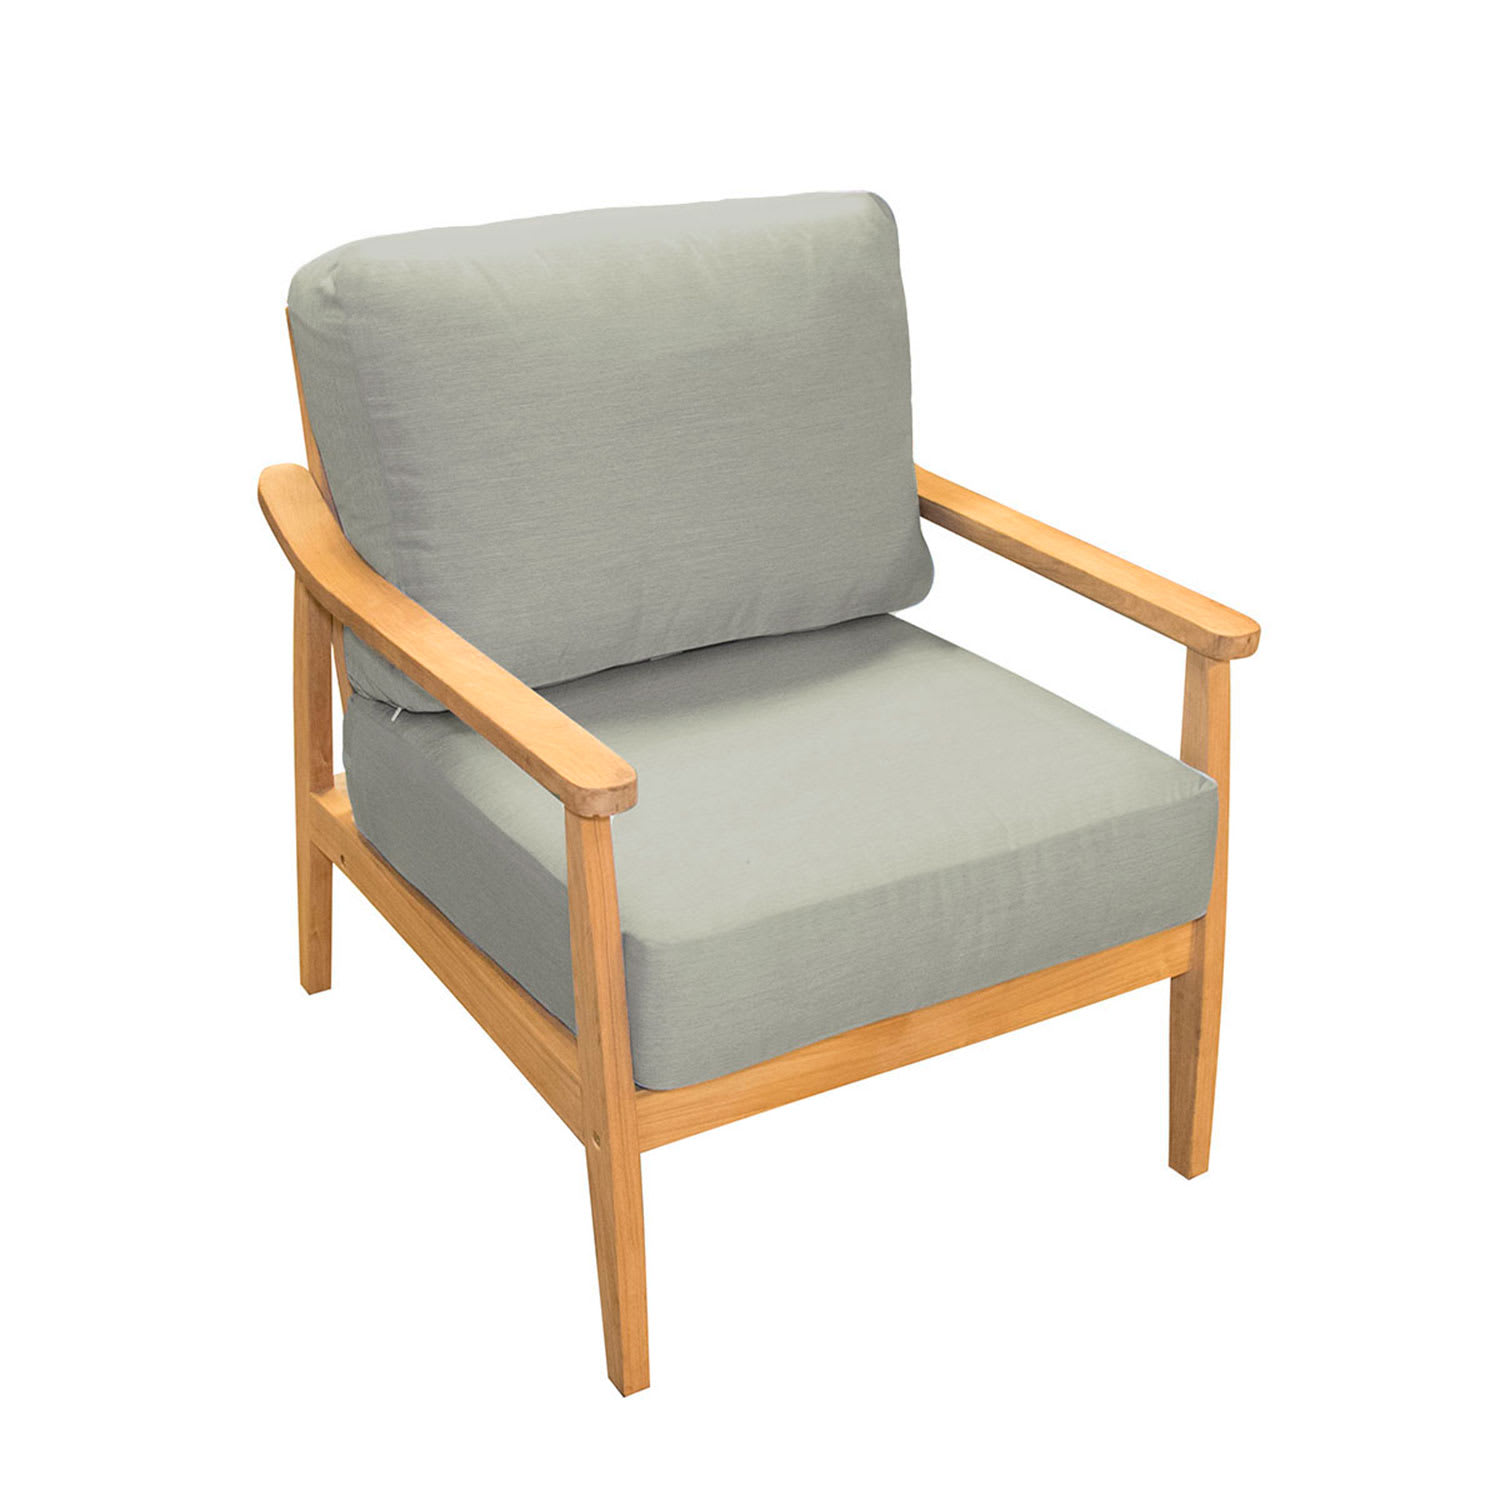 Oceanside Teak Arm Chair - Granite